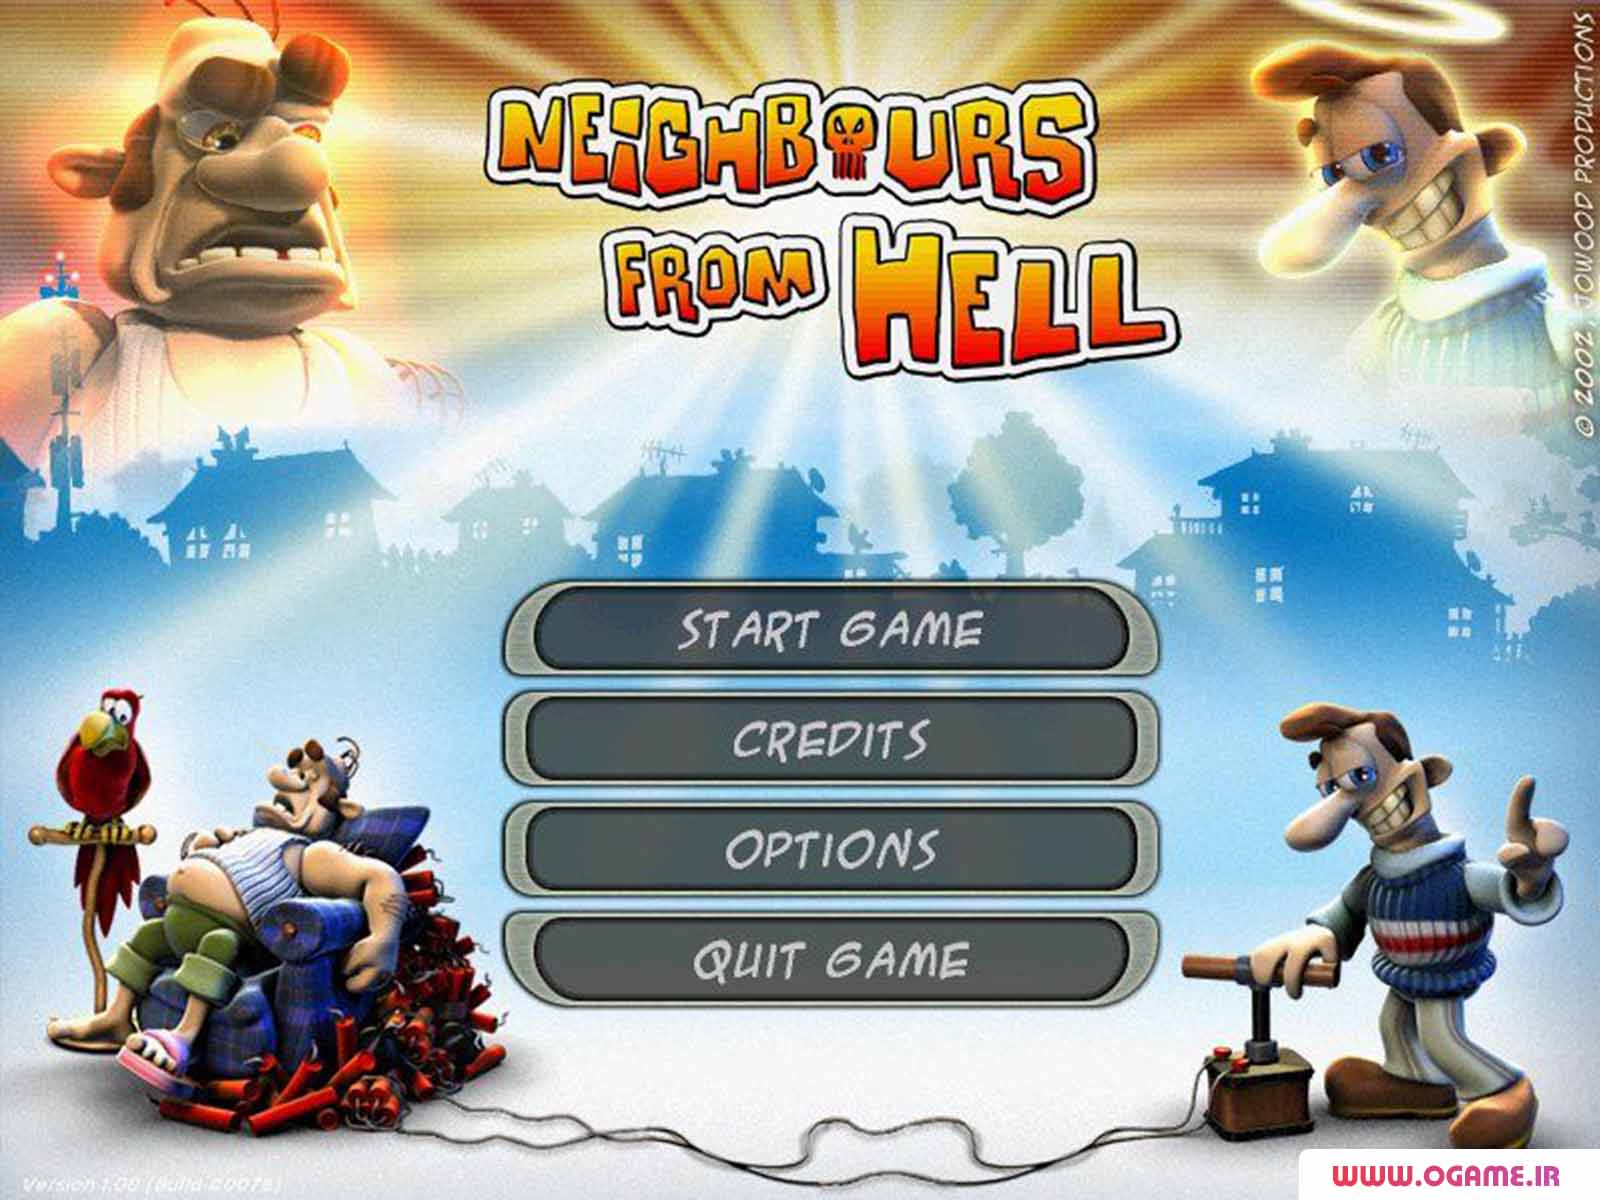  دانلود بازی همسایه جهنمی (Neighbours from Hell) نسخه کامل برای کامپیوتر